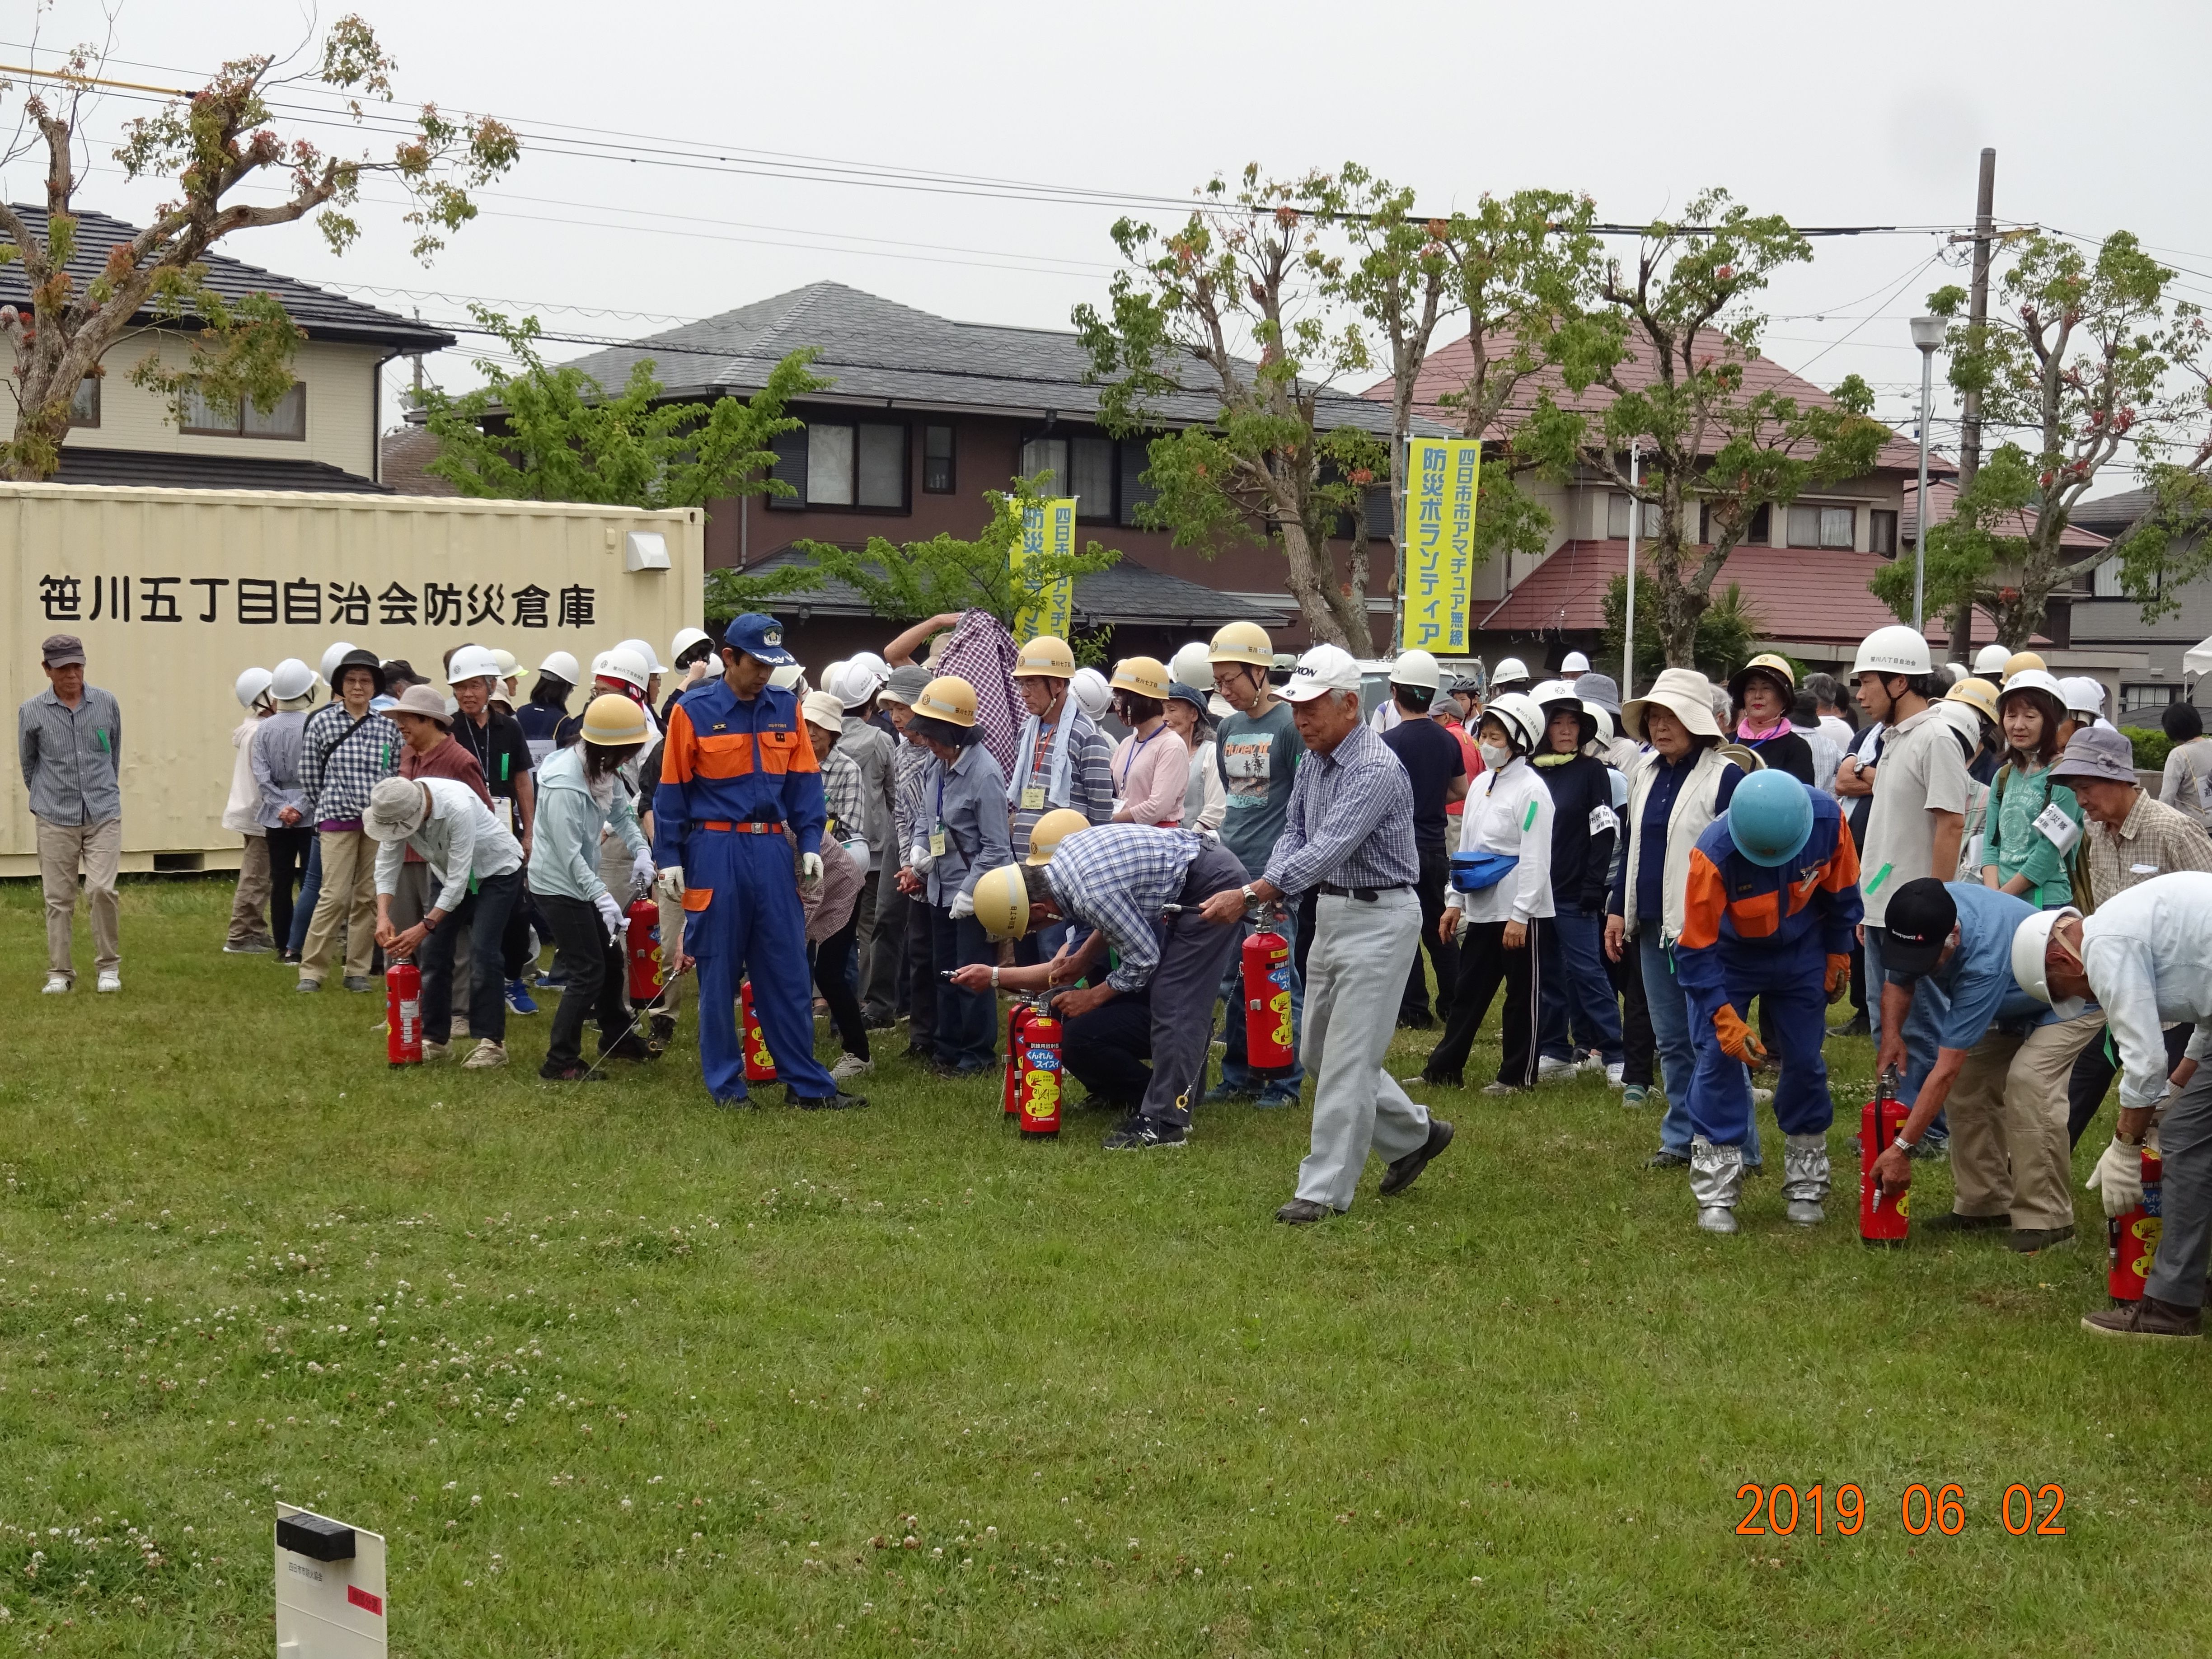 笹川地区防災訓練で水消火器の指導にあたる分団員